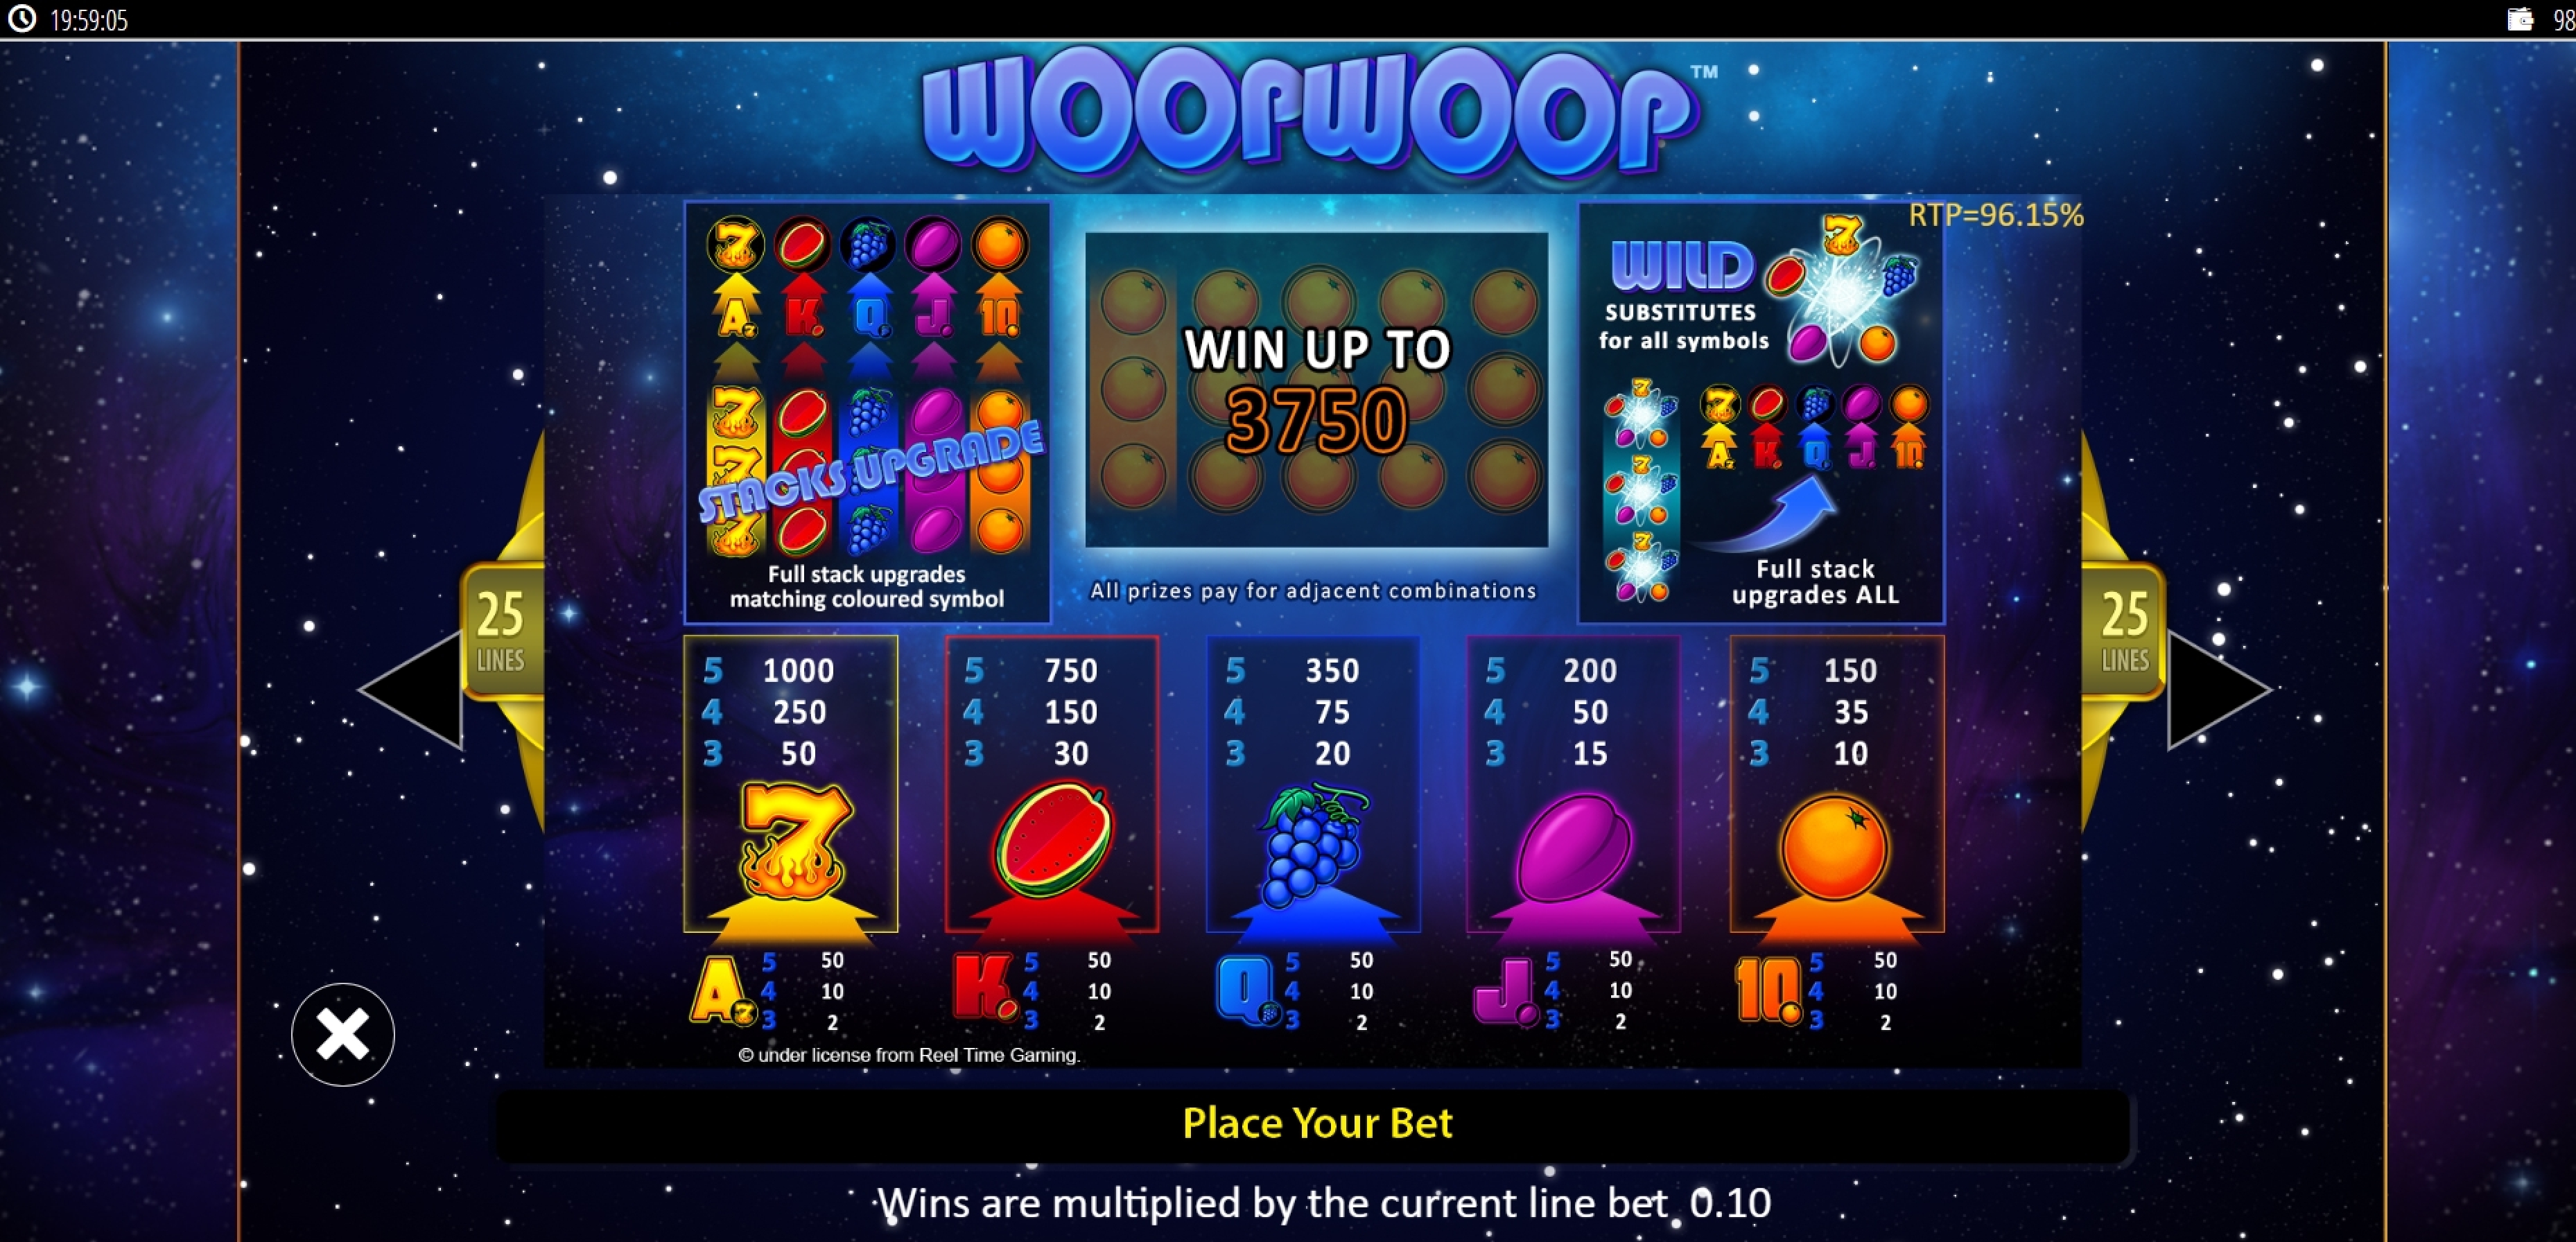 Info of Woop Woop Slot Game by Reel Time Gaming